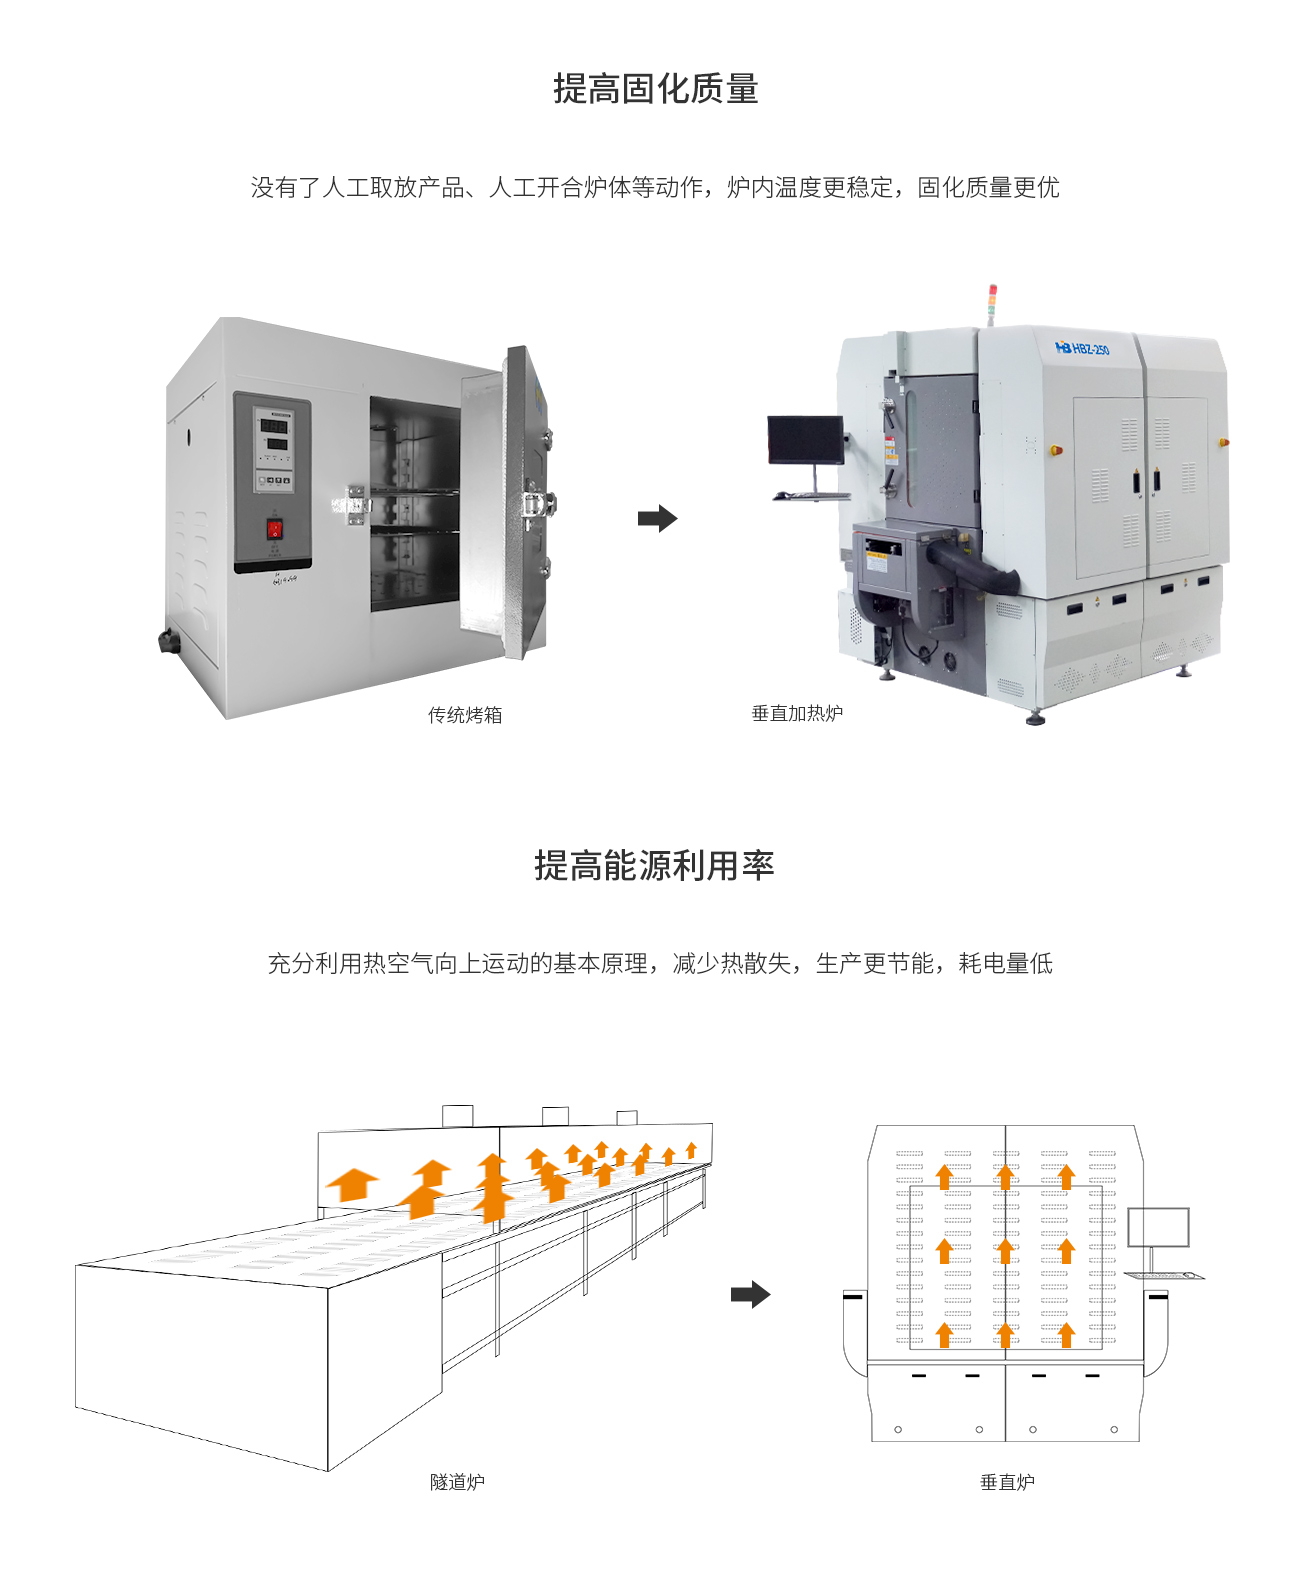 浩宝HBZ-250垂直固化炉提高固化质量和能源利用率